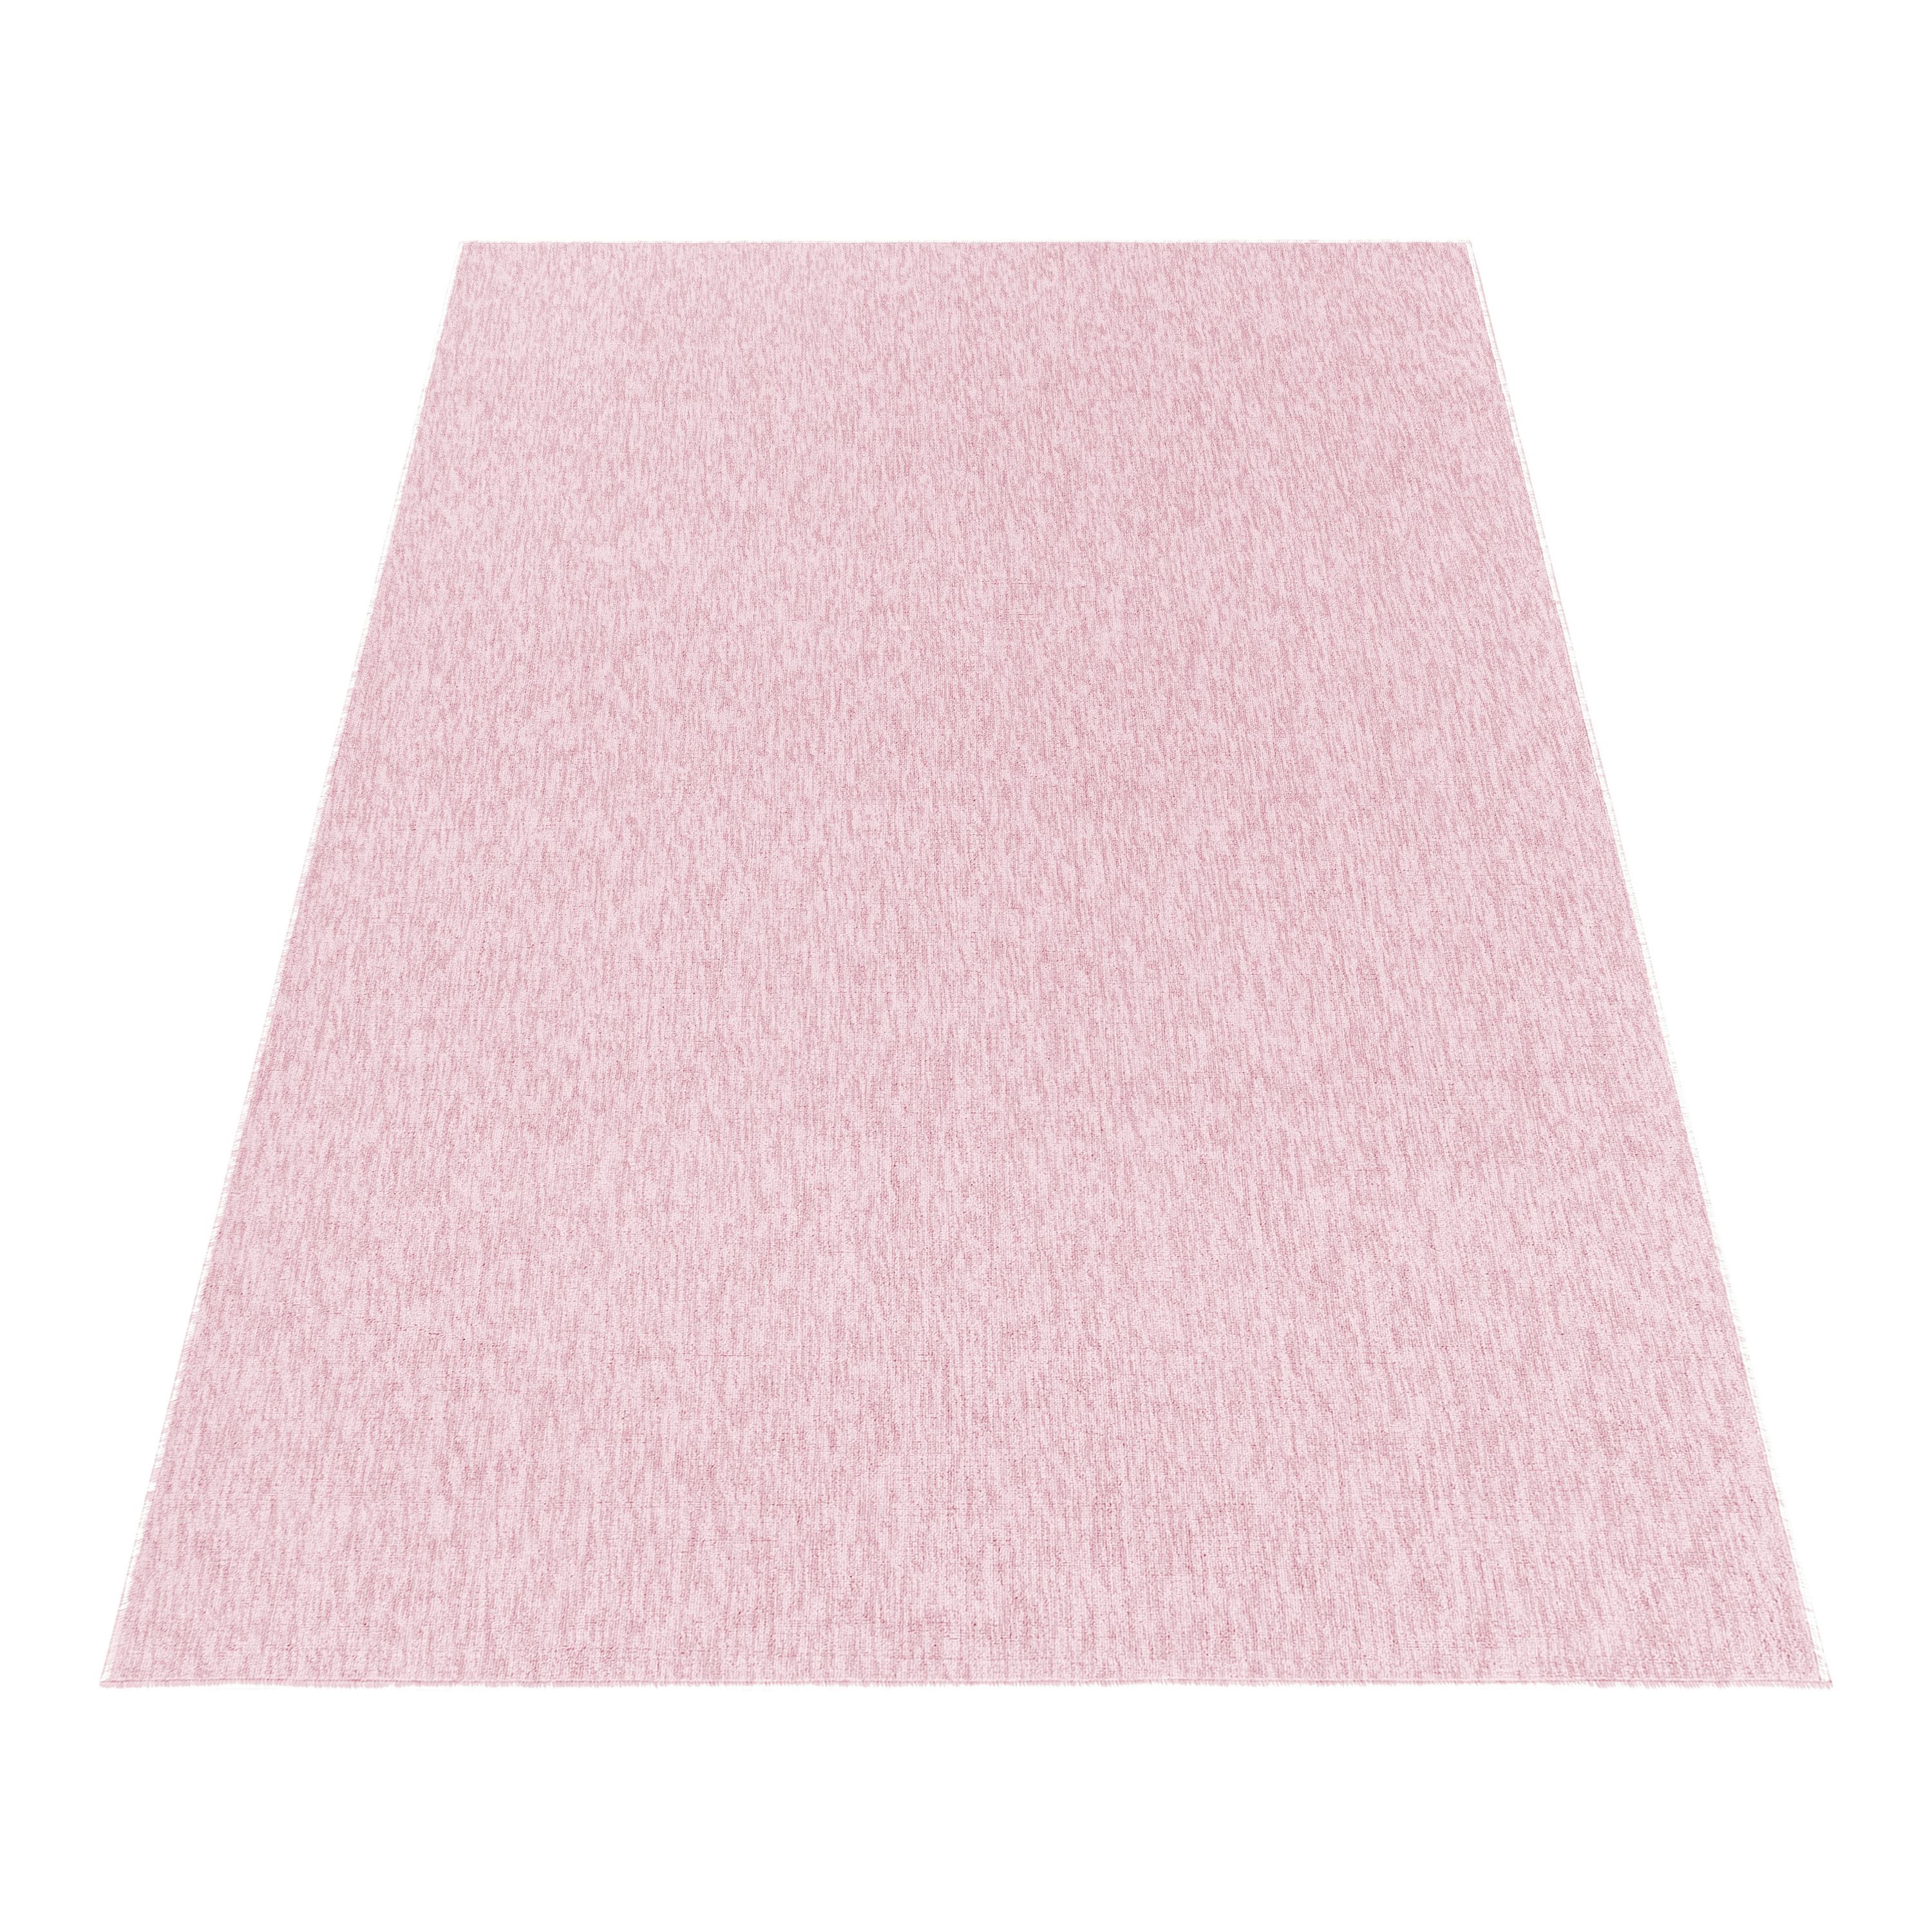 Kurzflor Wohnzimmer Teppich Einfarbig Flachgewebe Rose meliert glänzend